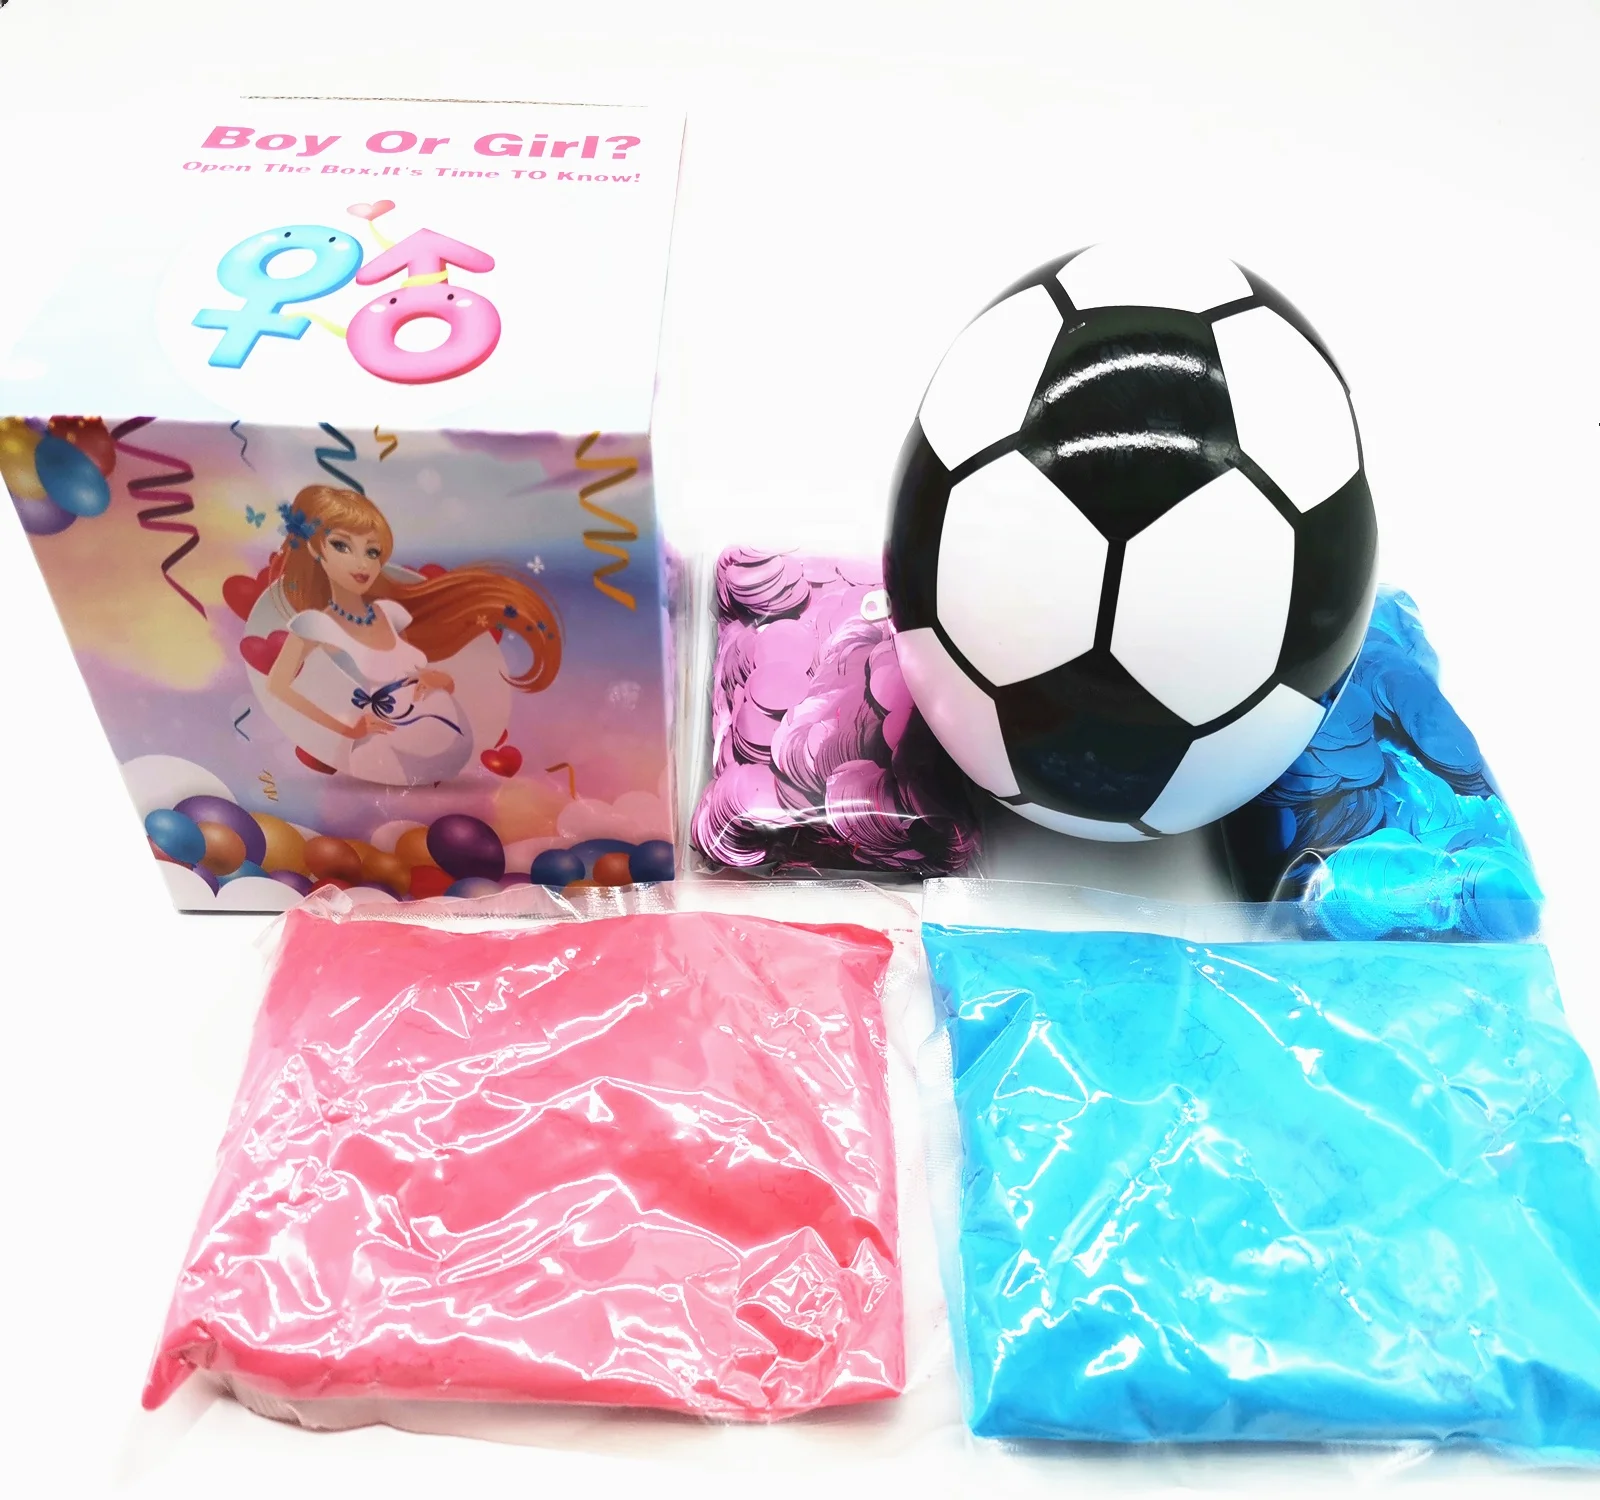 Gender Reveal Exploding Powder pallone da calcio con Kit di